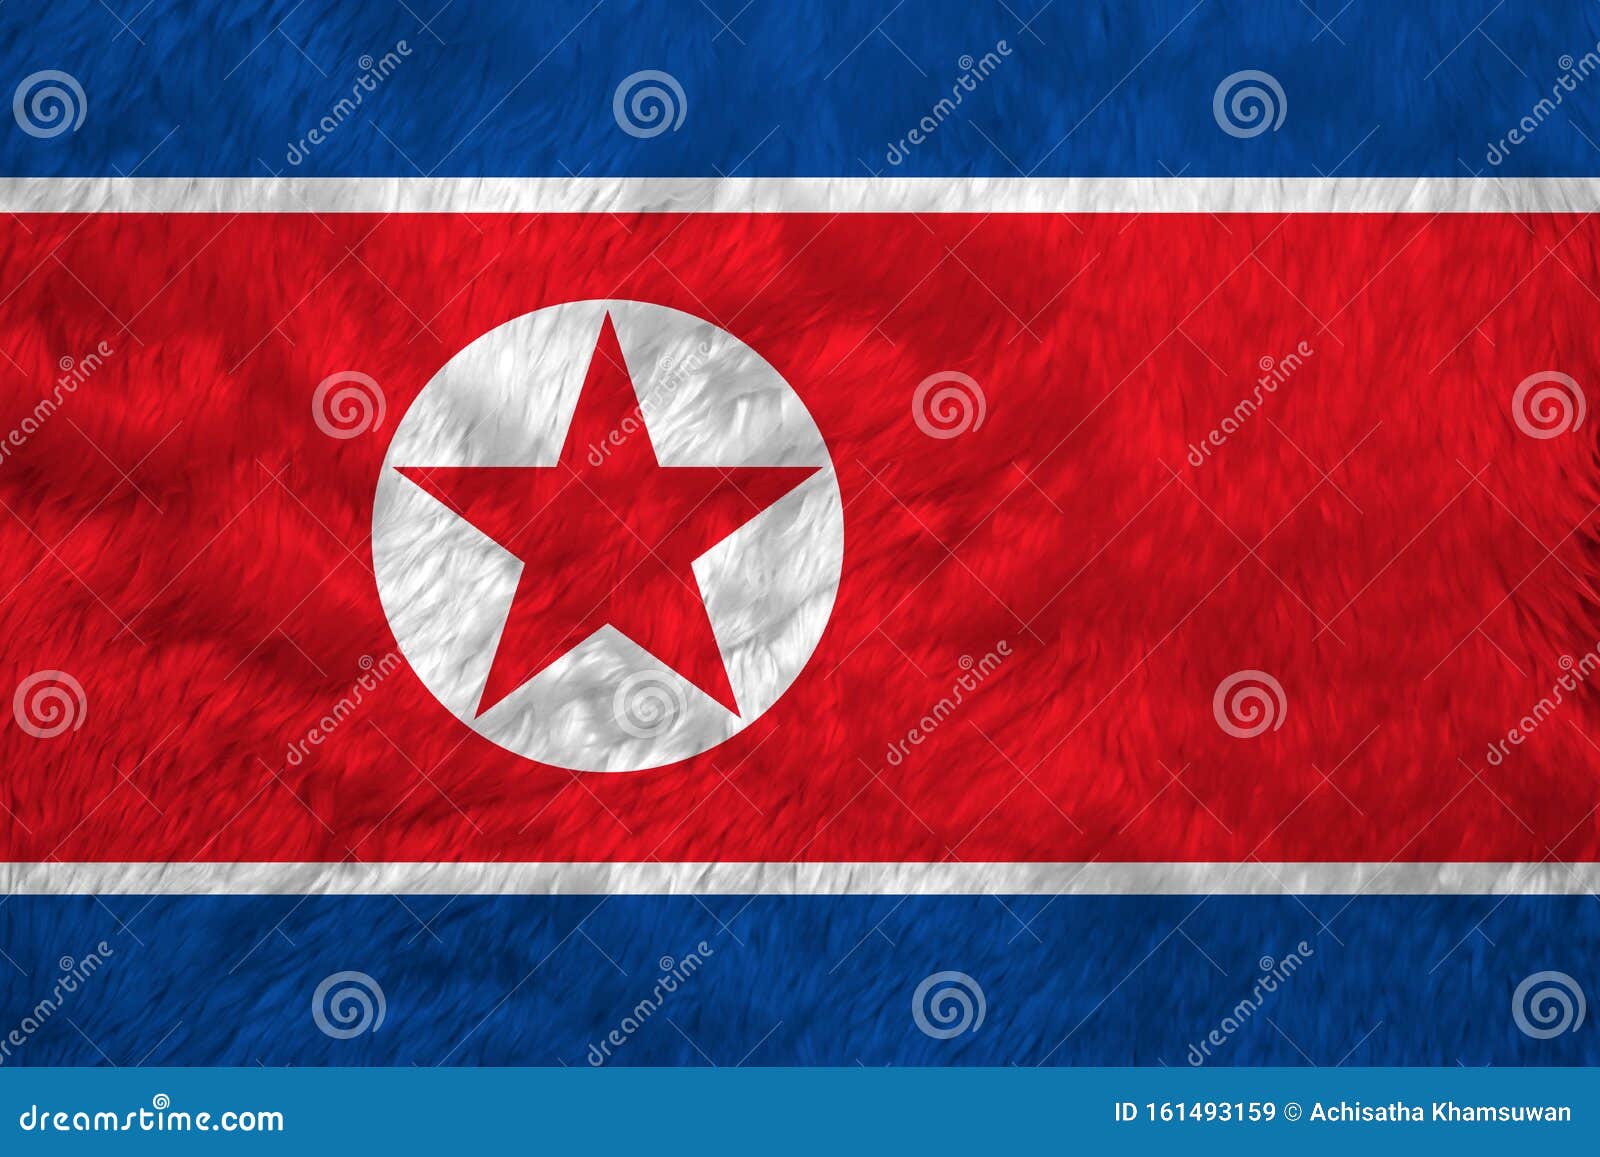 Stofftuchmuster Fahne In Nordkorea Horizontaler Roter Und Roter Stern In Einem Weissen Kreis Stockbild Bild Von Freiheit Nahaufnahme 161493159